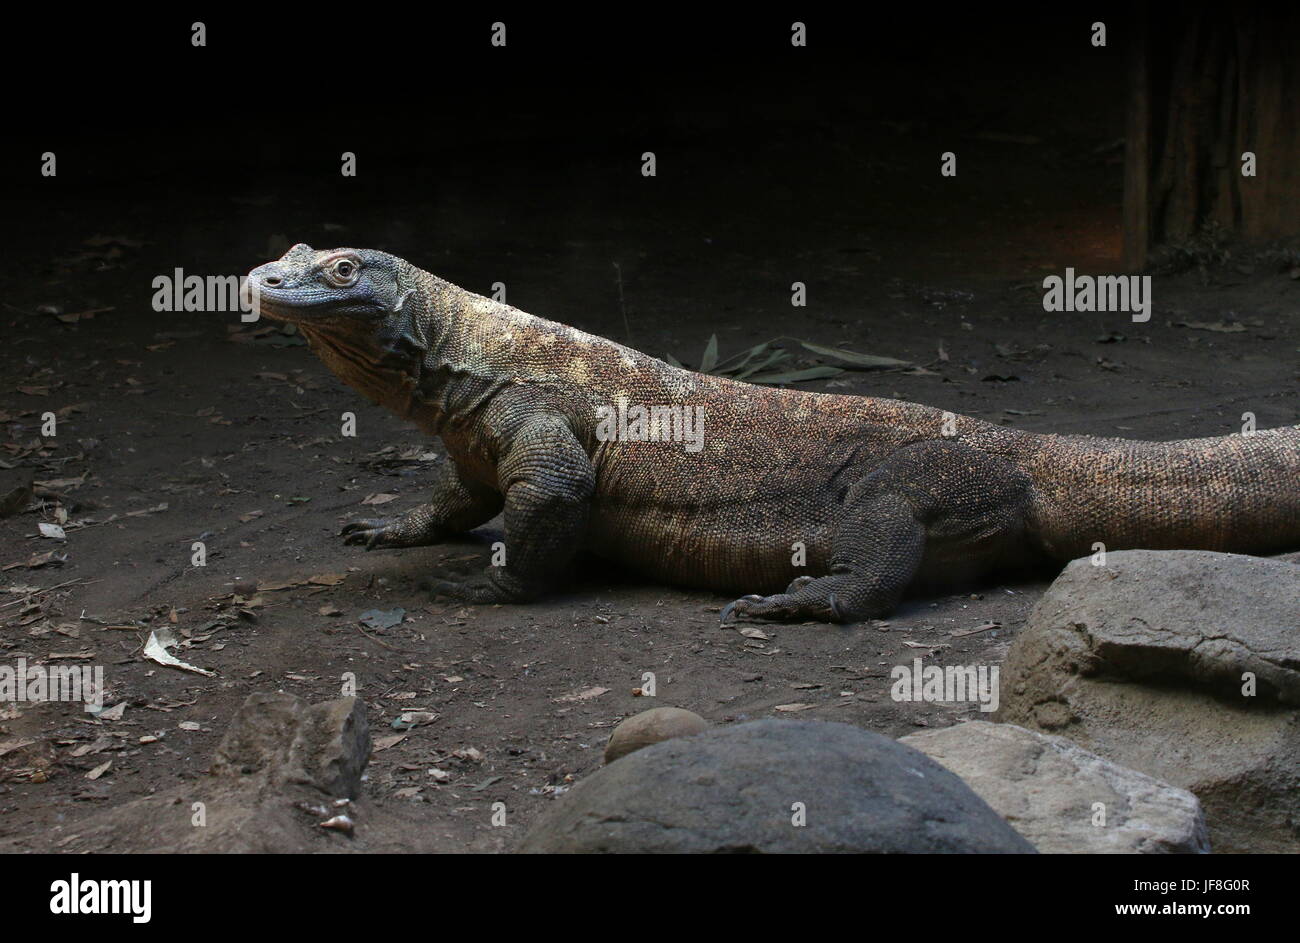 Male Indonesian Komodo dragon (Varanus komodoensis) Stock Photo